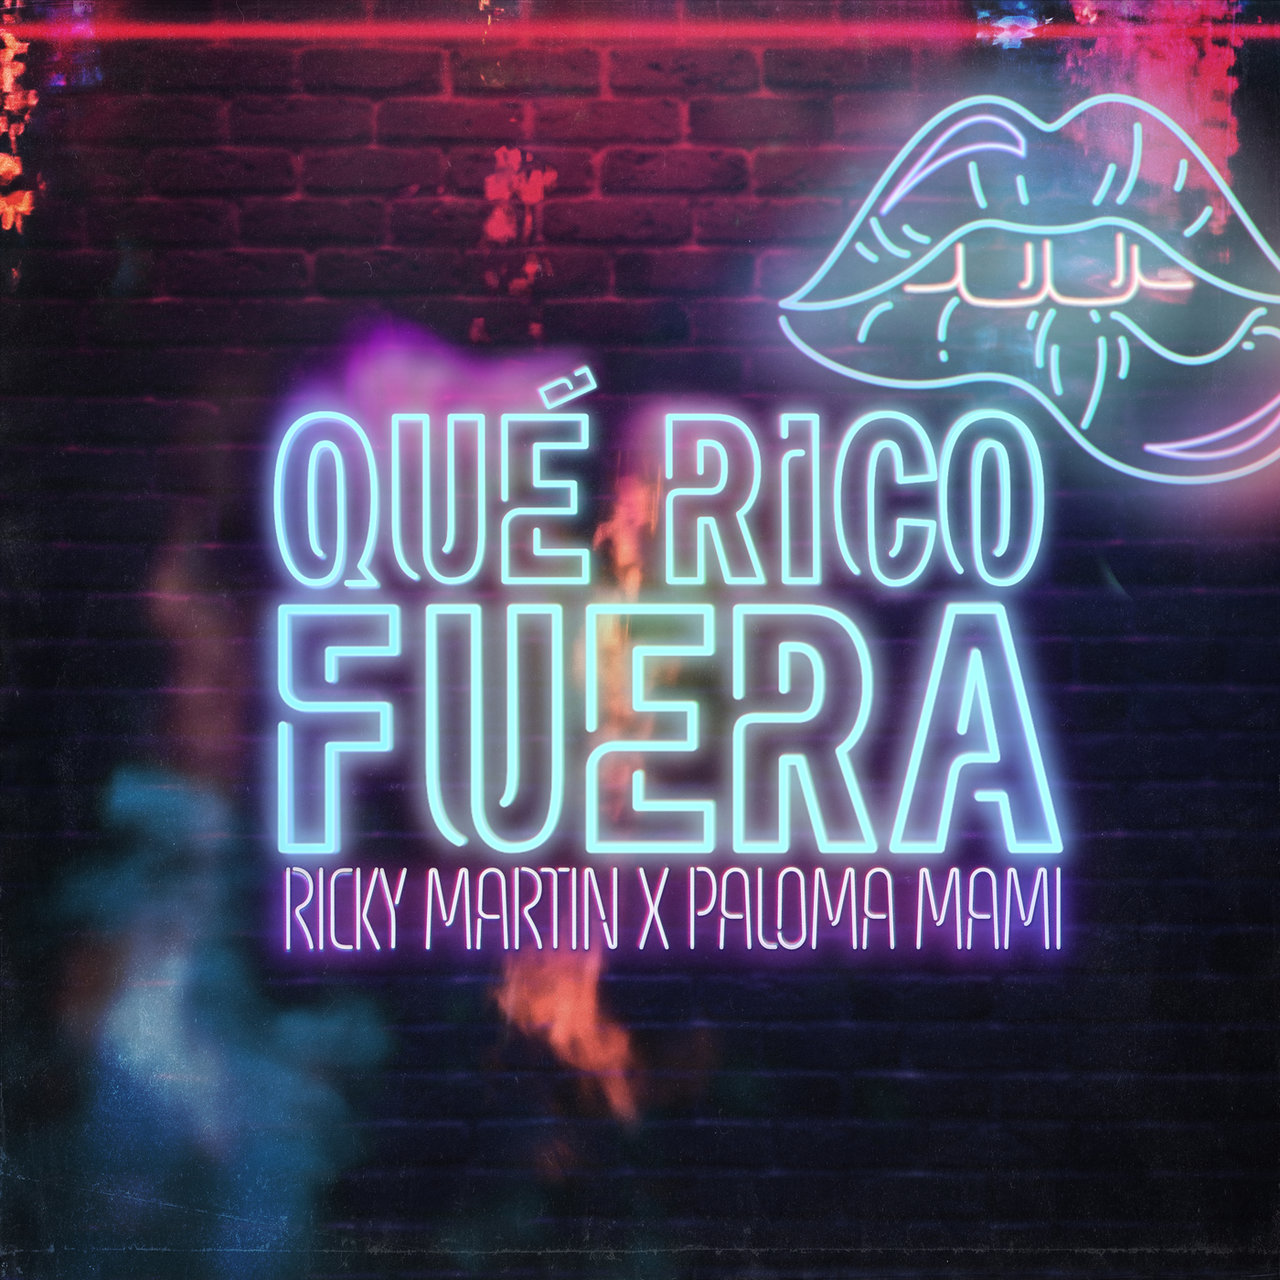 Ricky Martin - Qué Rico Fuera (ft. Paloma Mami) (Cover)